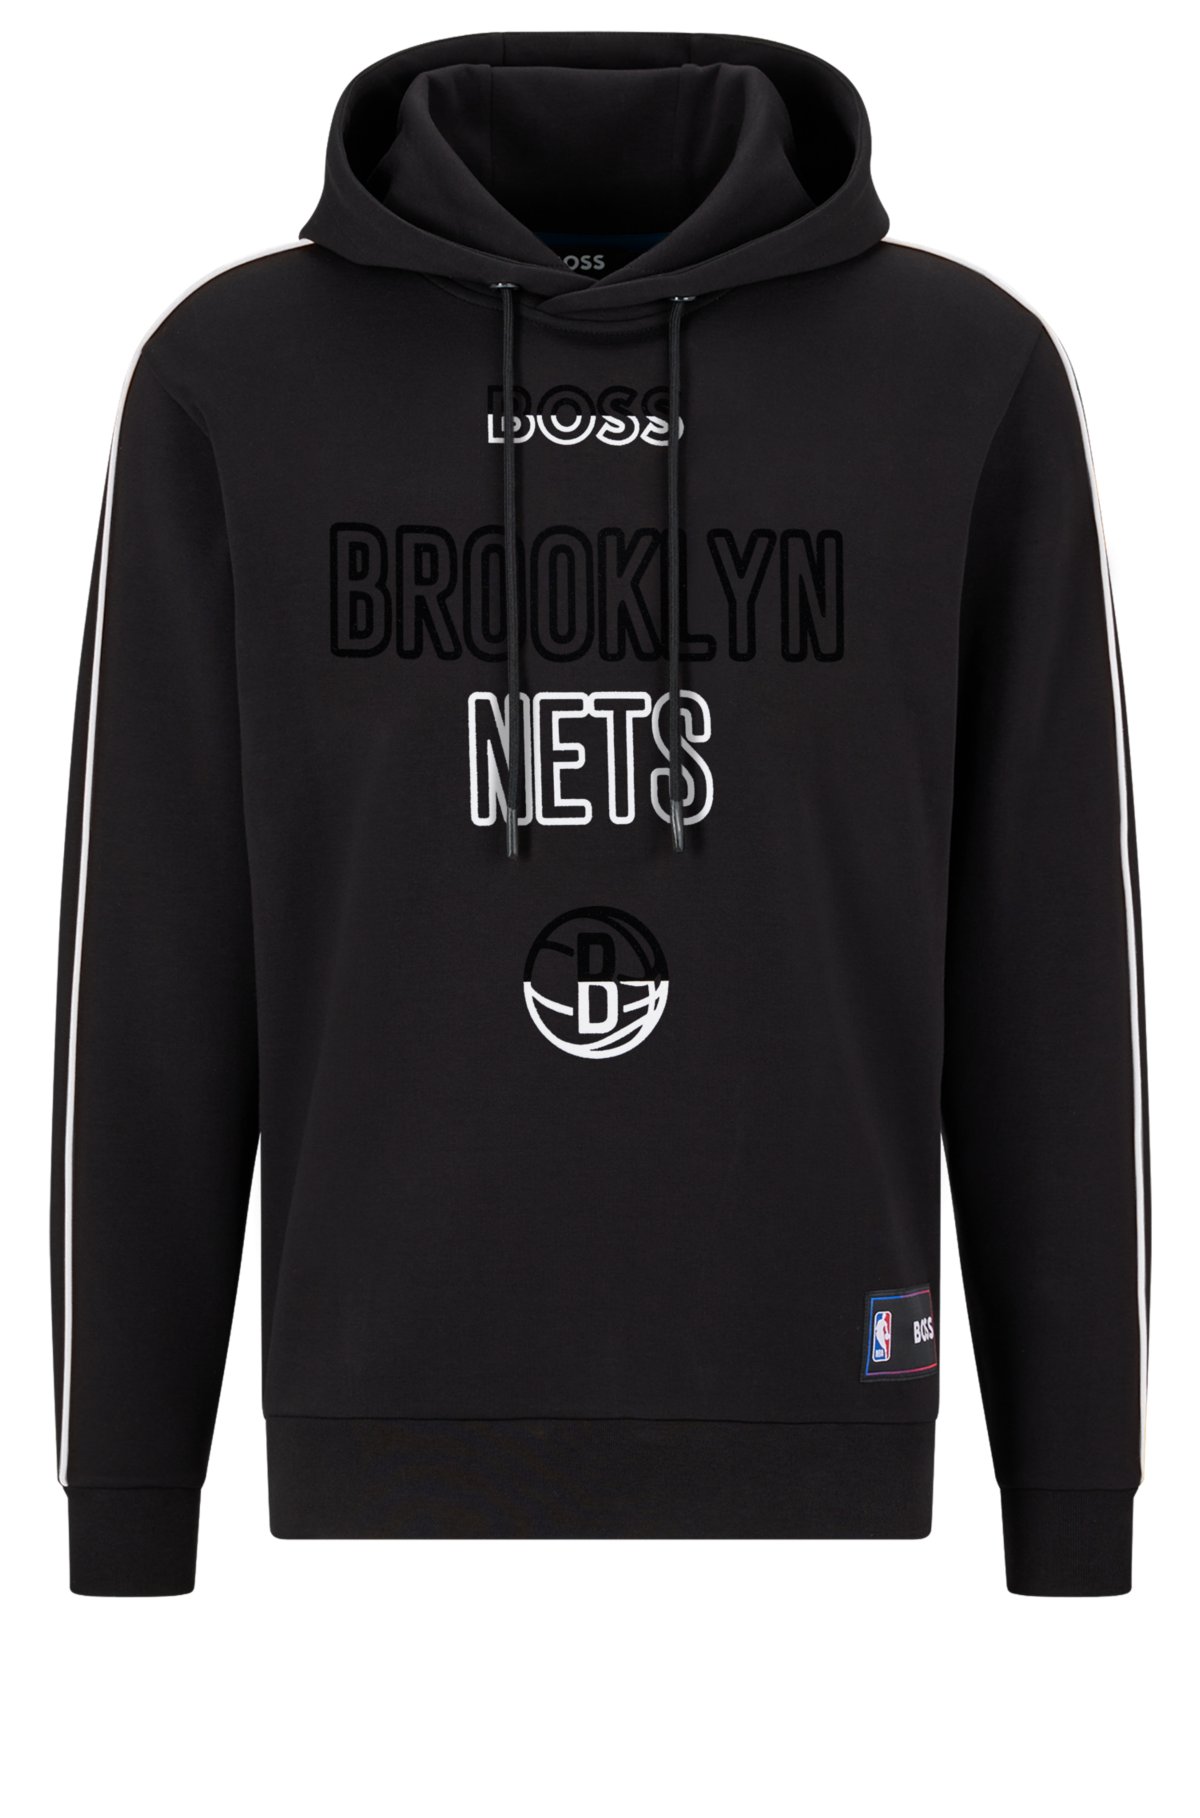 NBA Brooklyn Nets Hoodies & Sweatshirts Clothing